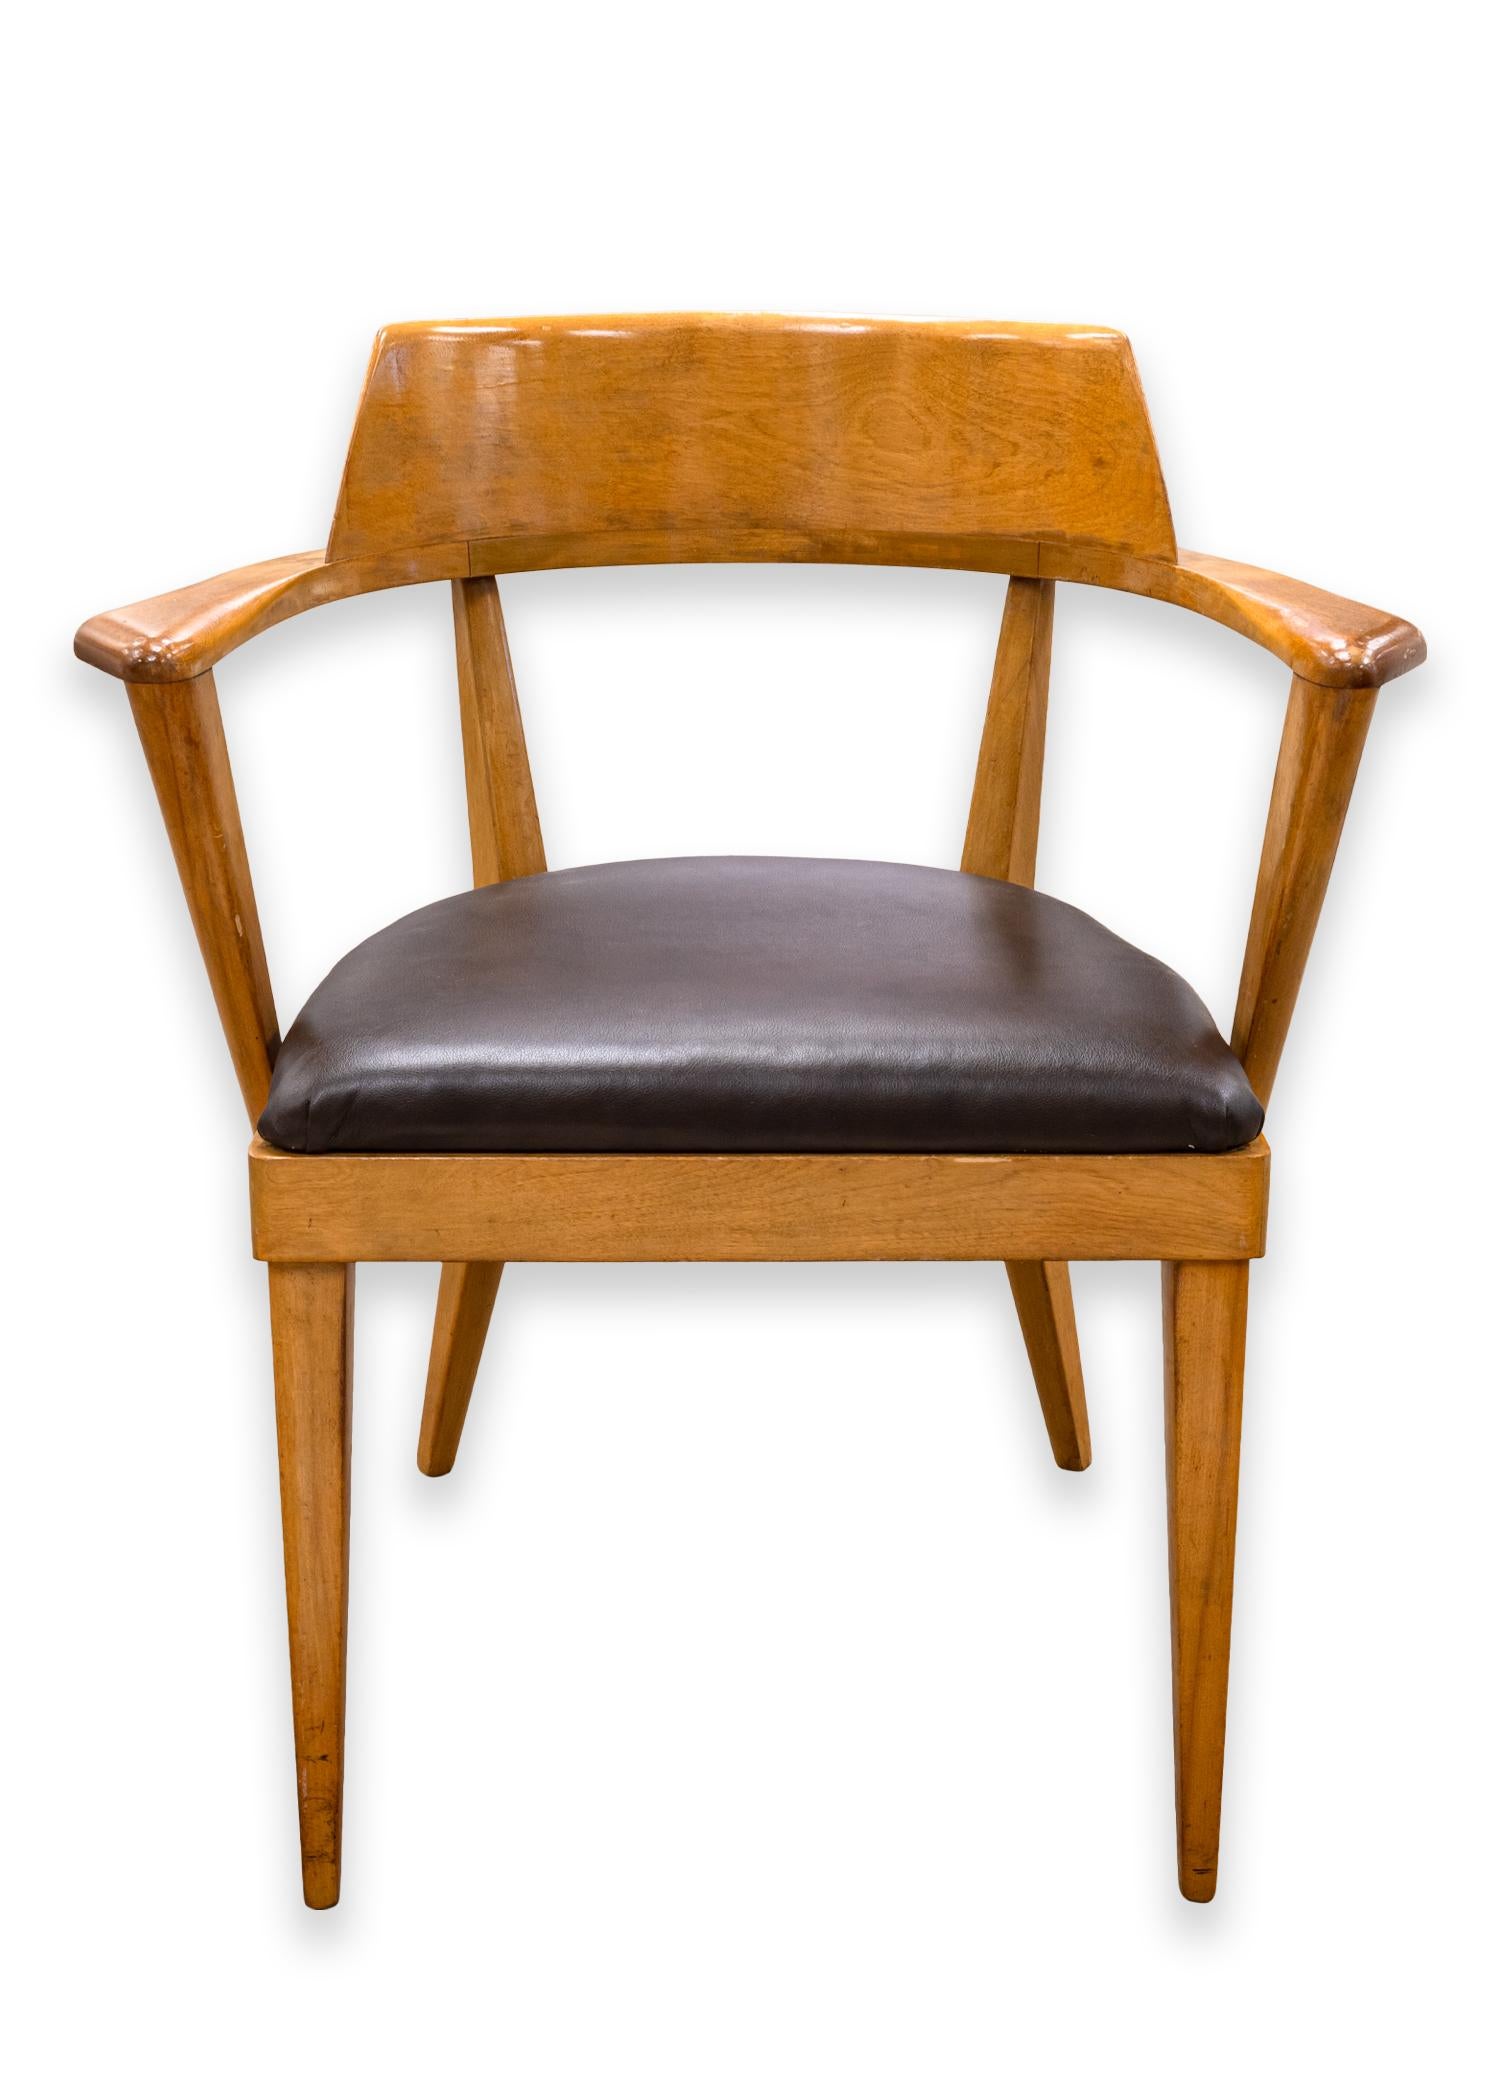 Paire de fauteuils Heywood Wakefield. Un très bel ensemble de fauteuils conçus par Leo Jiranek et Ernest Herrmann pour Heywood Wakefield. Ces chaises sont fabriquées en bouleau avec une finition 